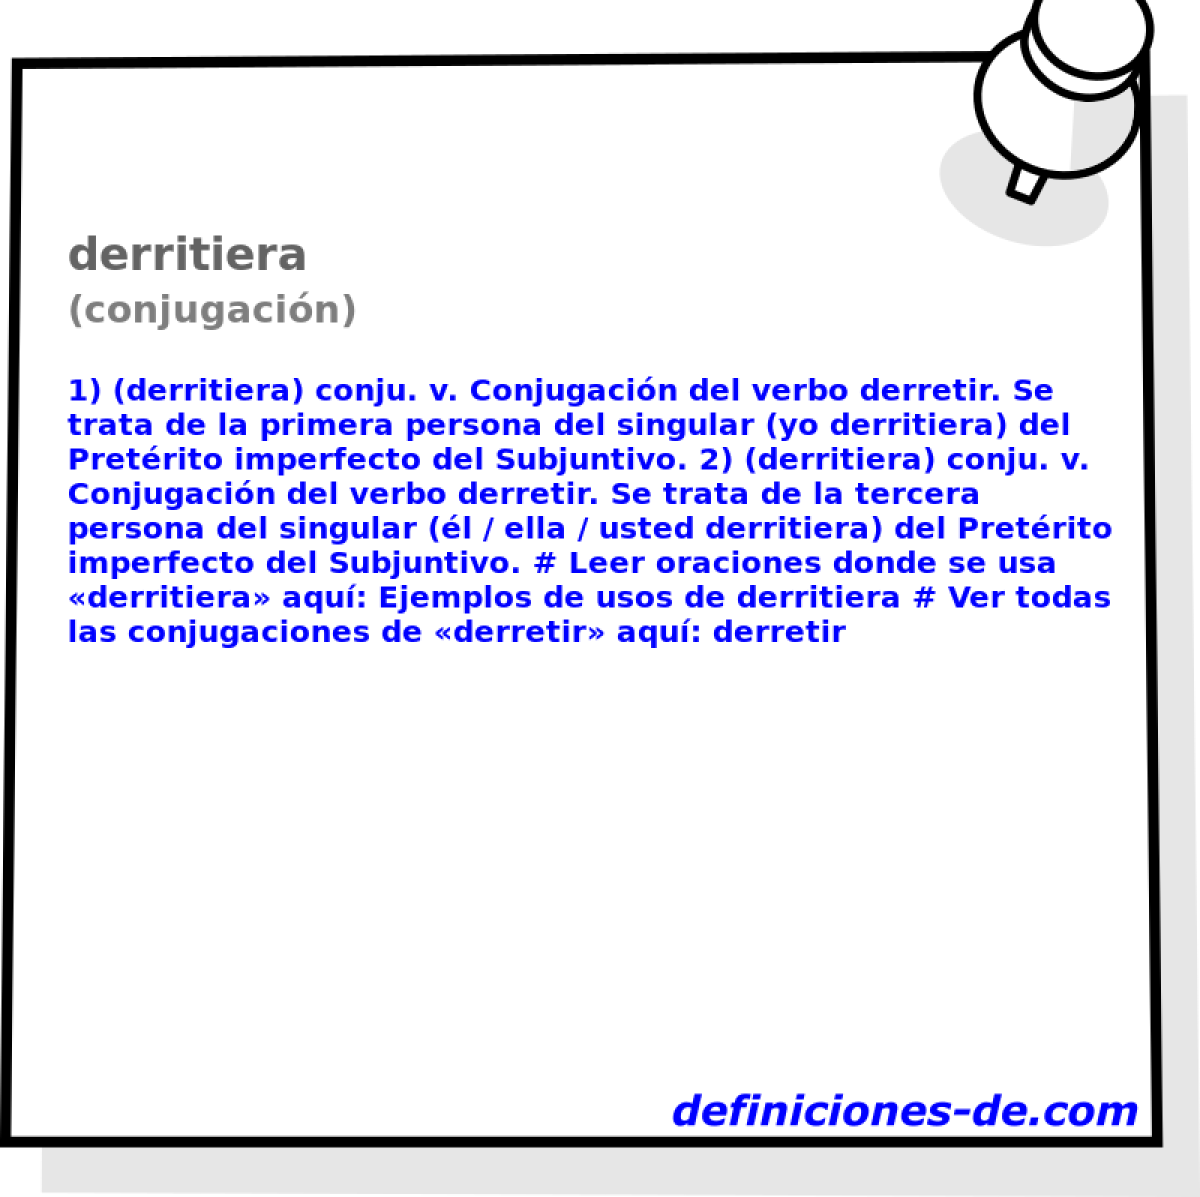 derritiera (conjugacin)